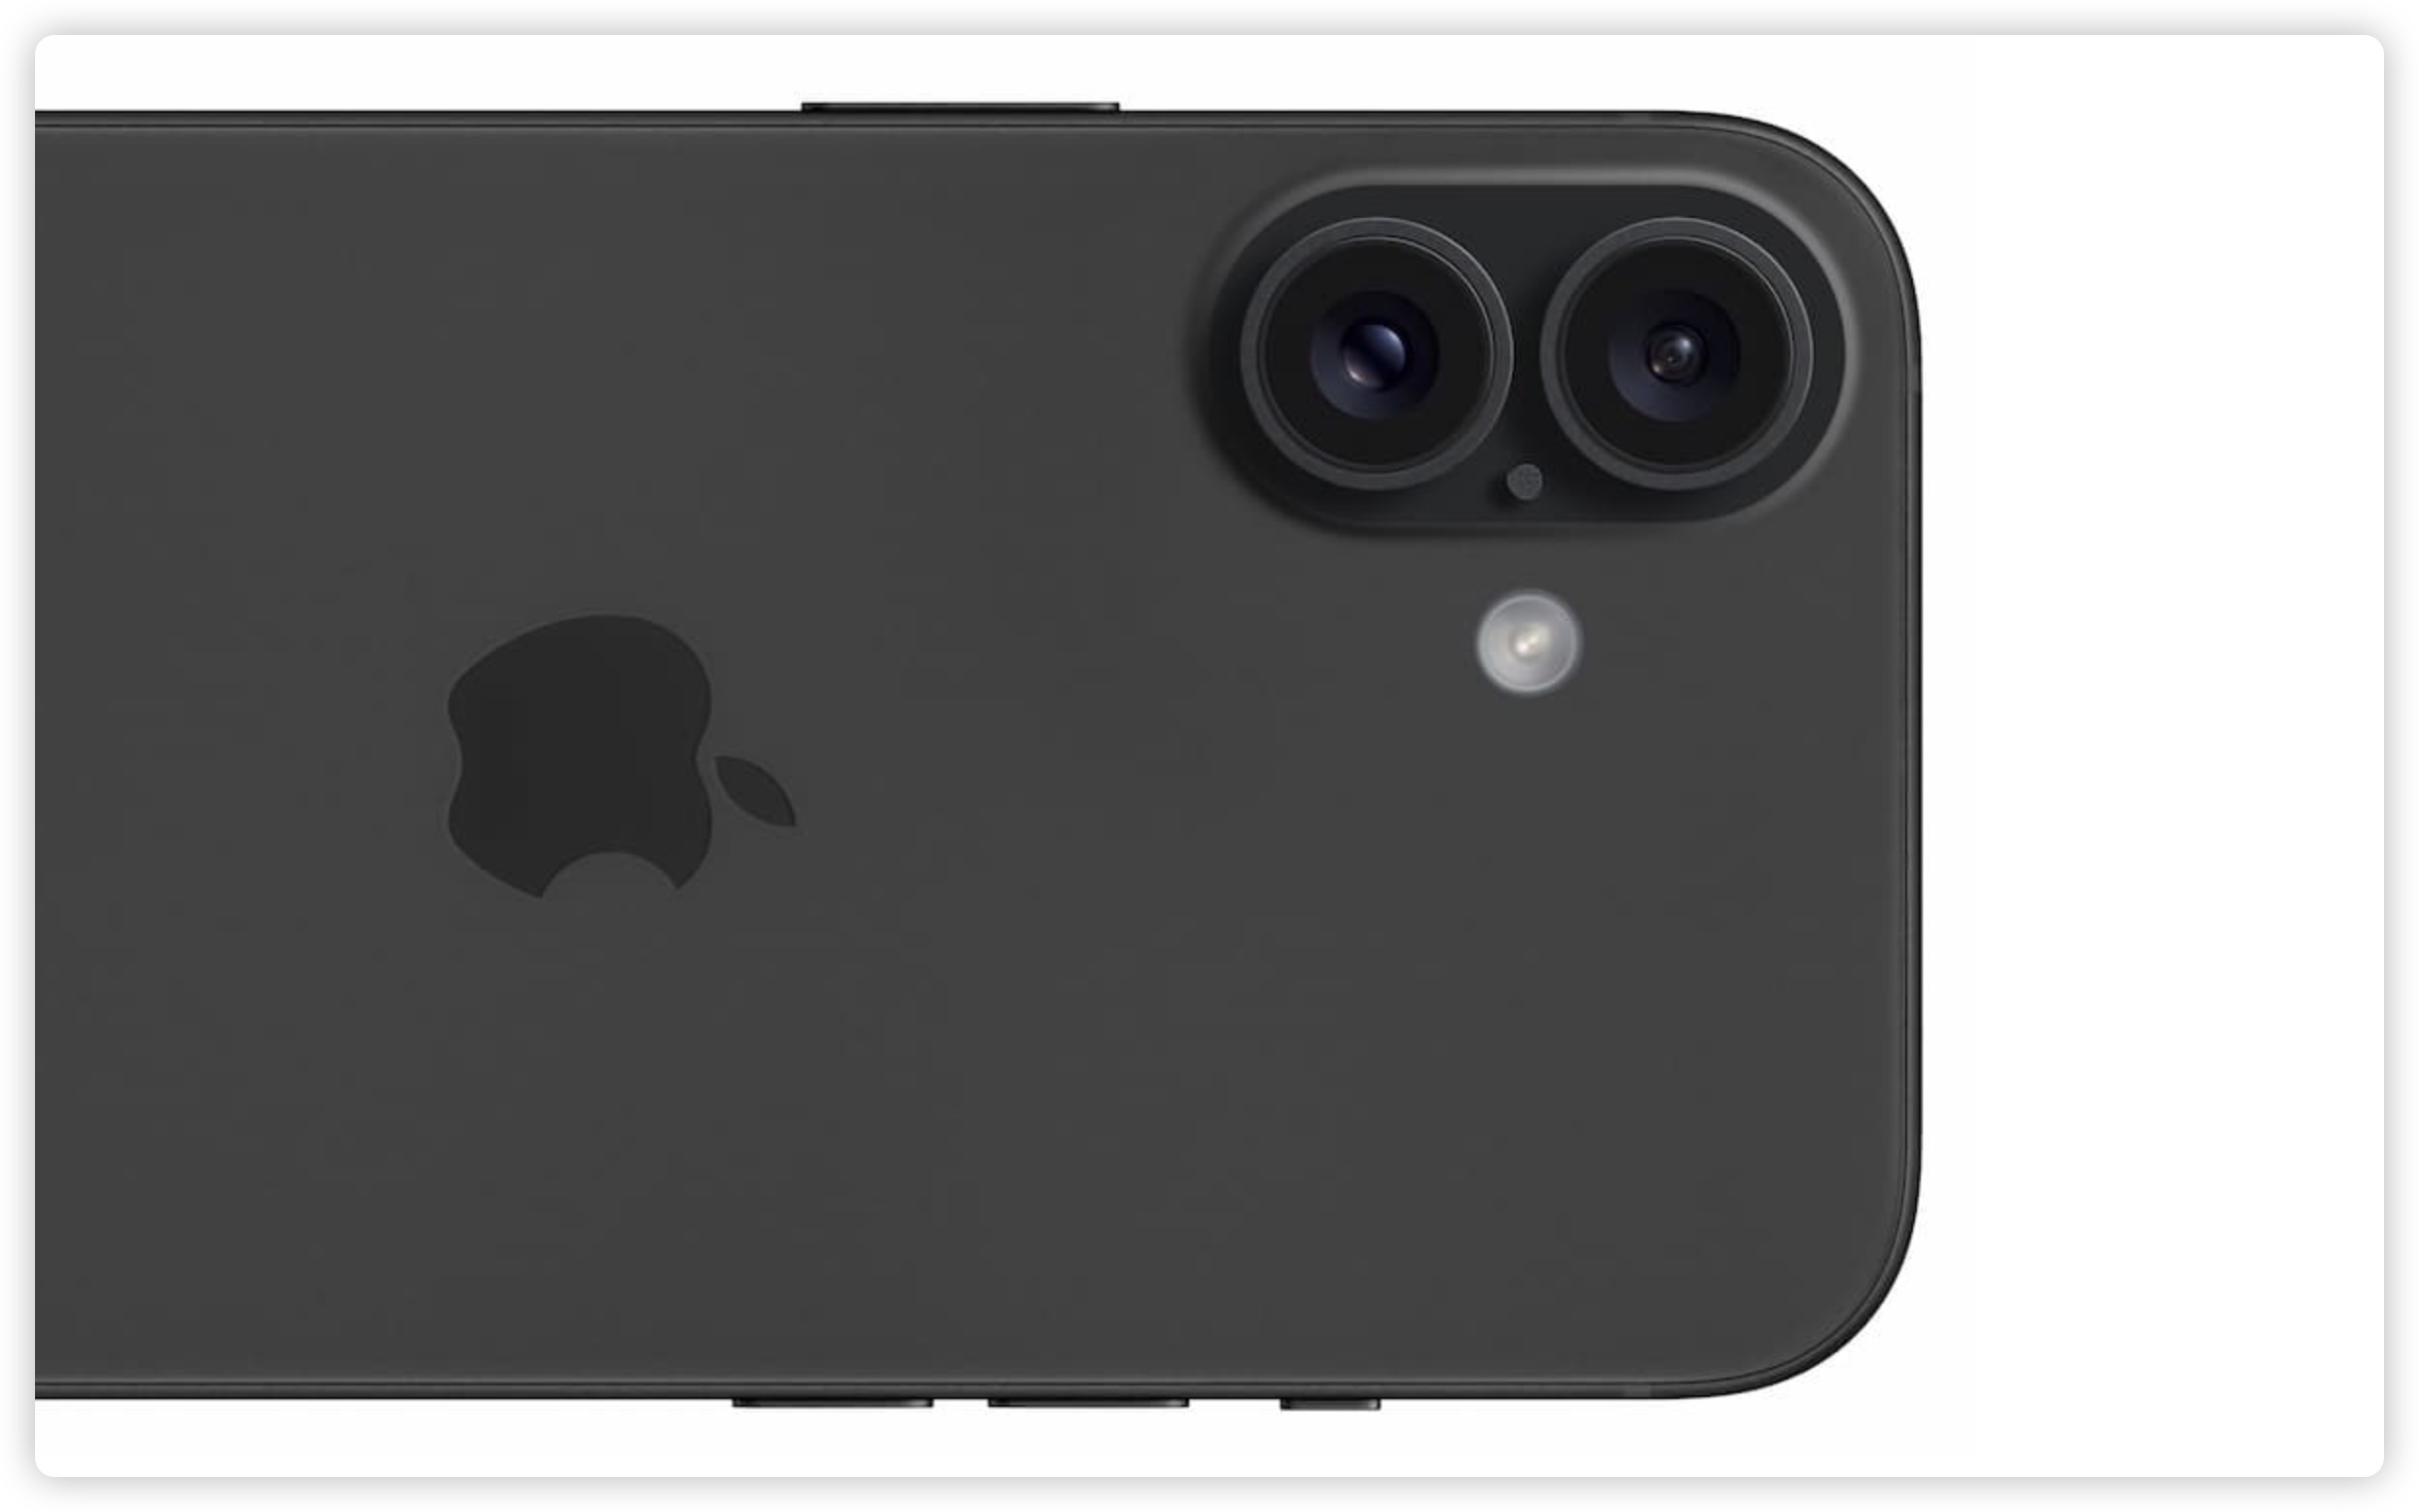 iPhone 16 鏡頭模組 垂直排列 爆料